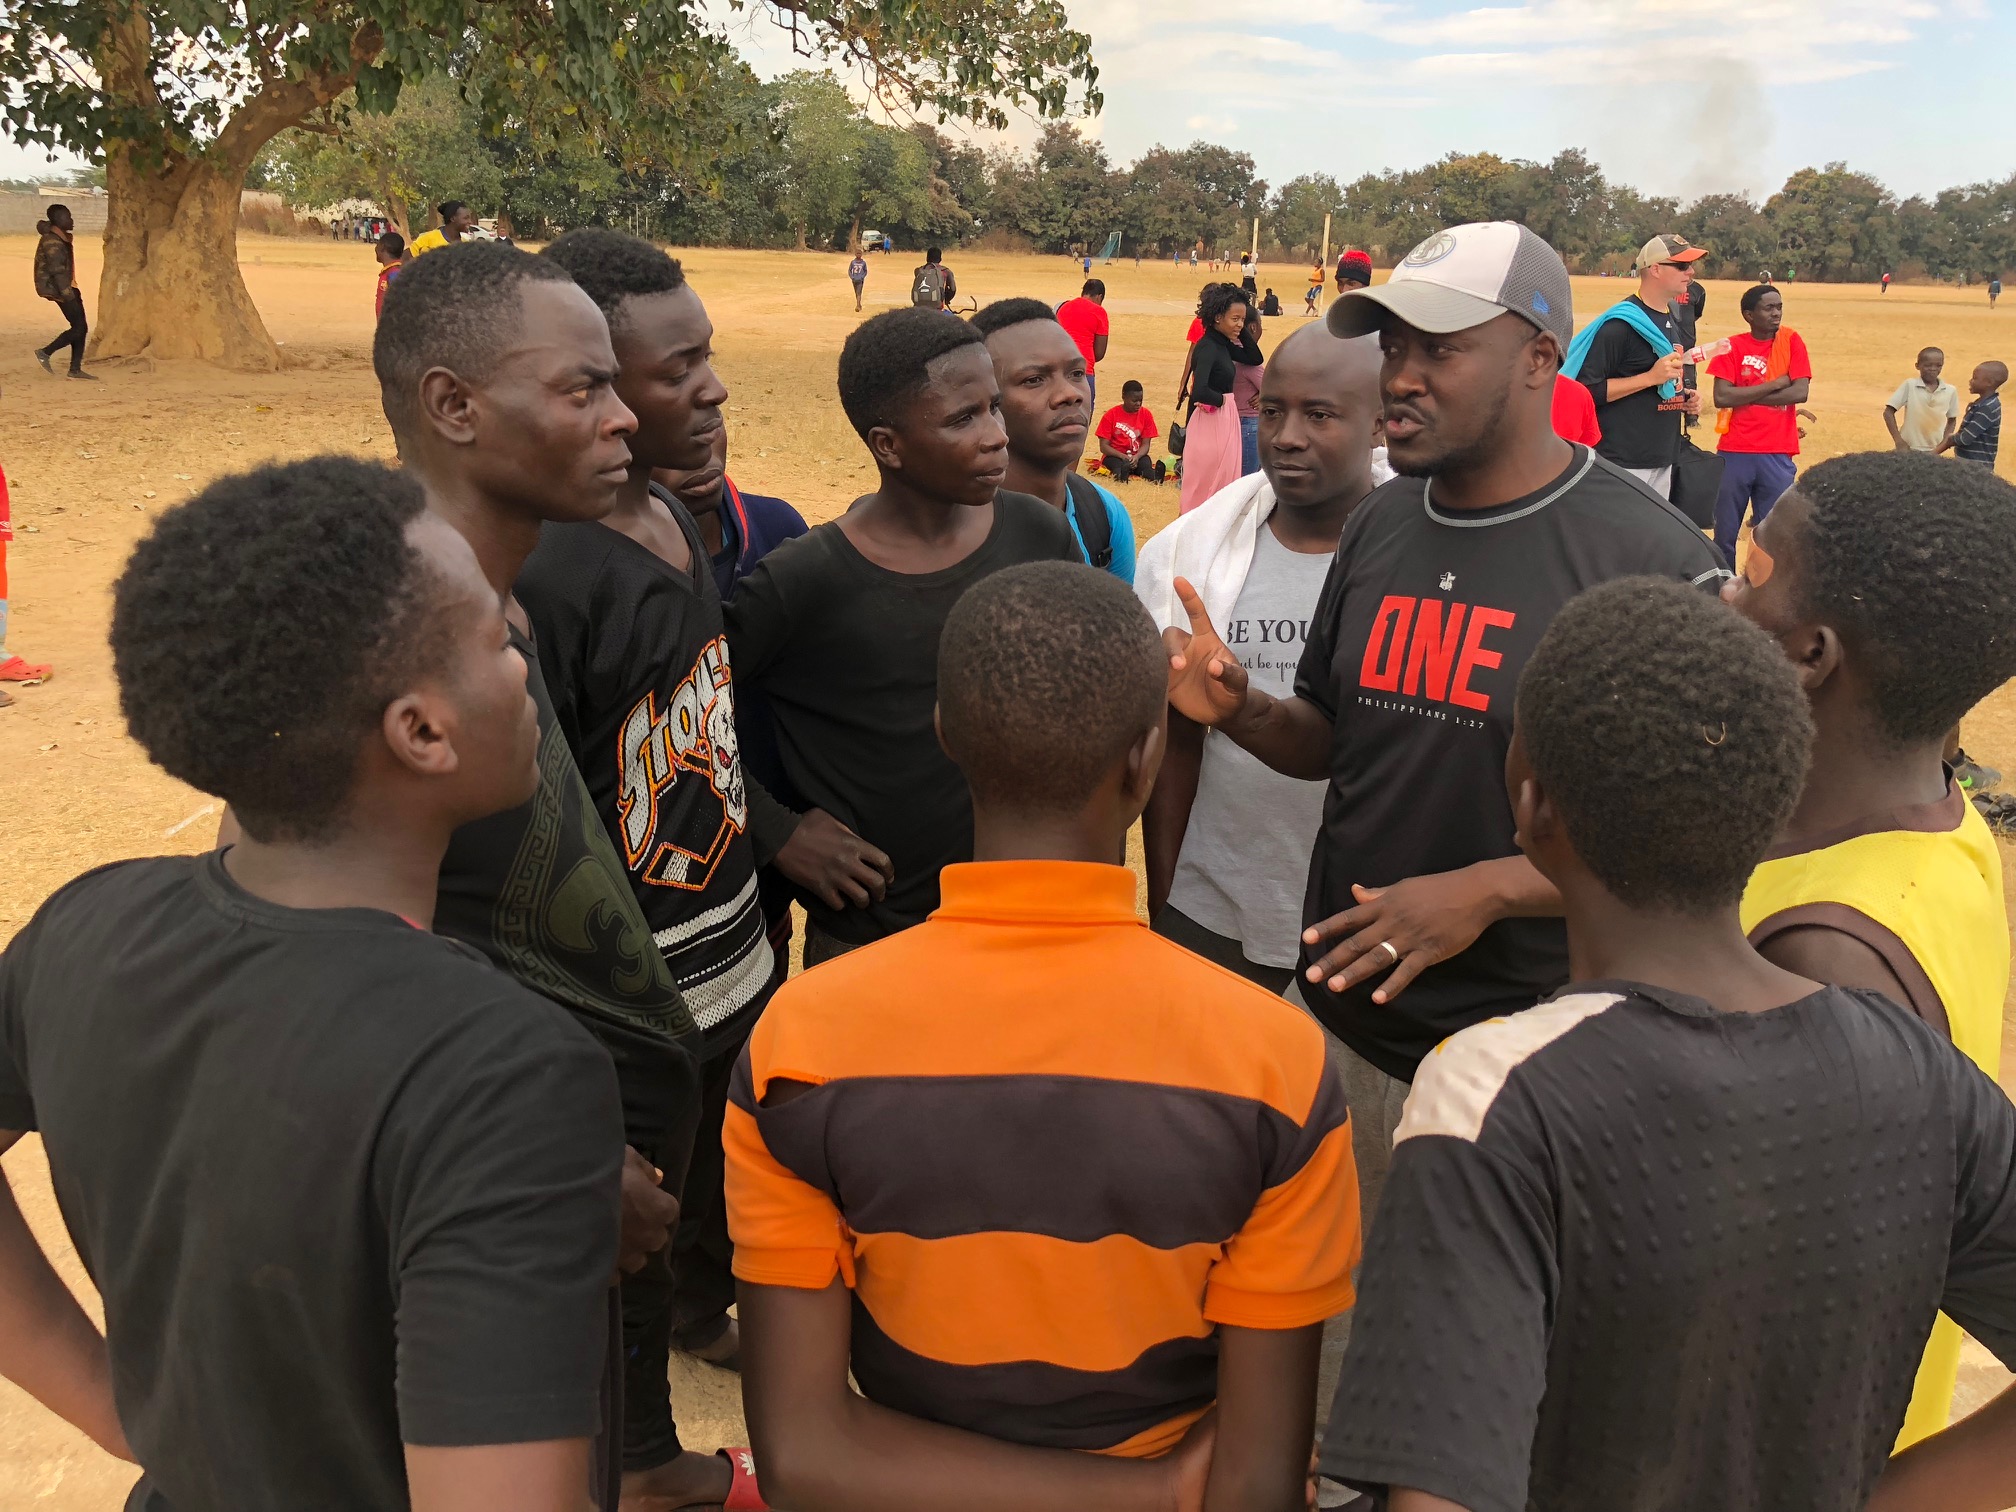 Coaches Camp in Zambia